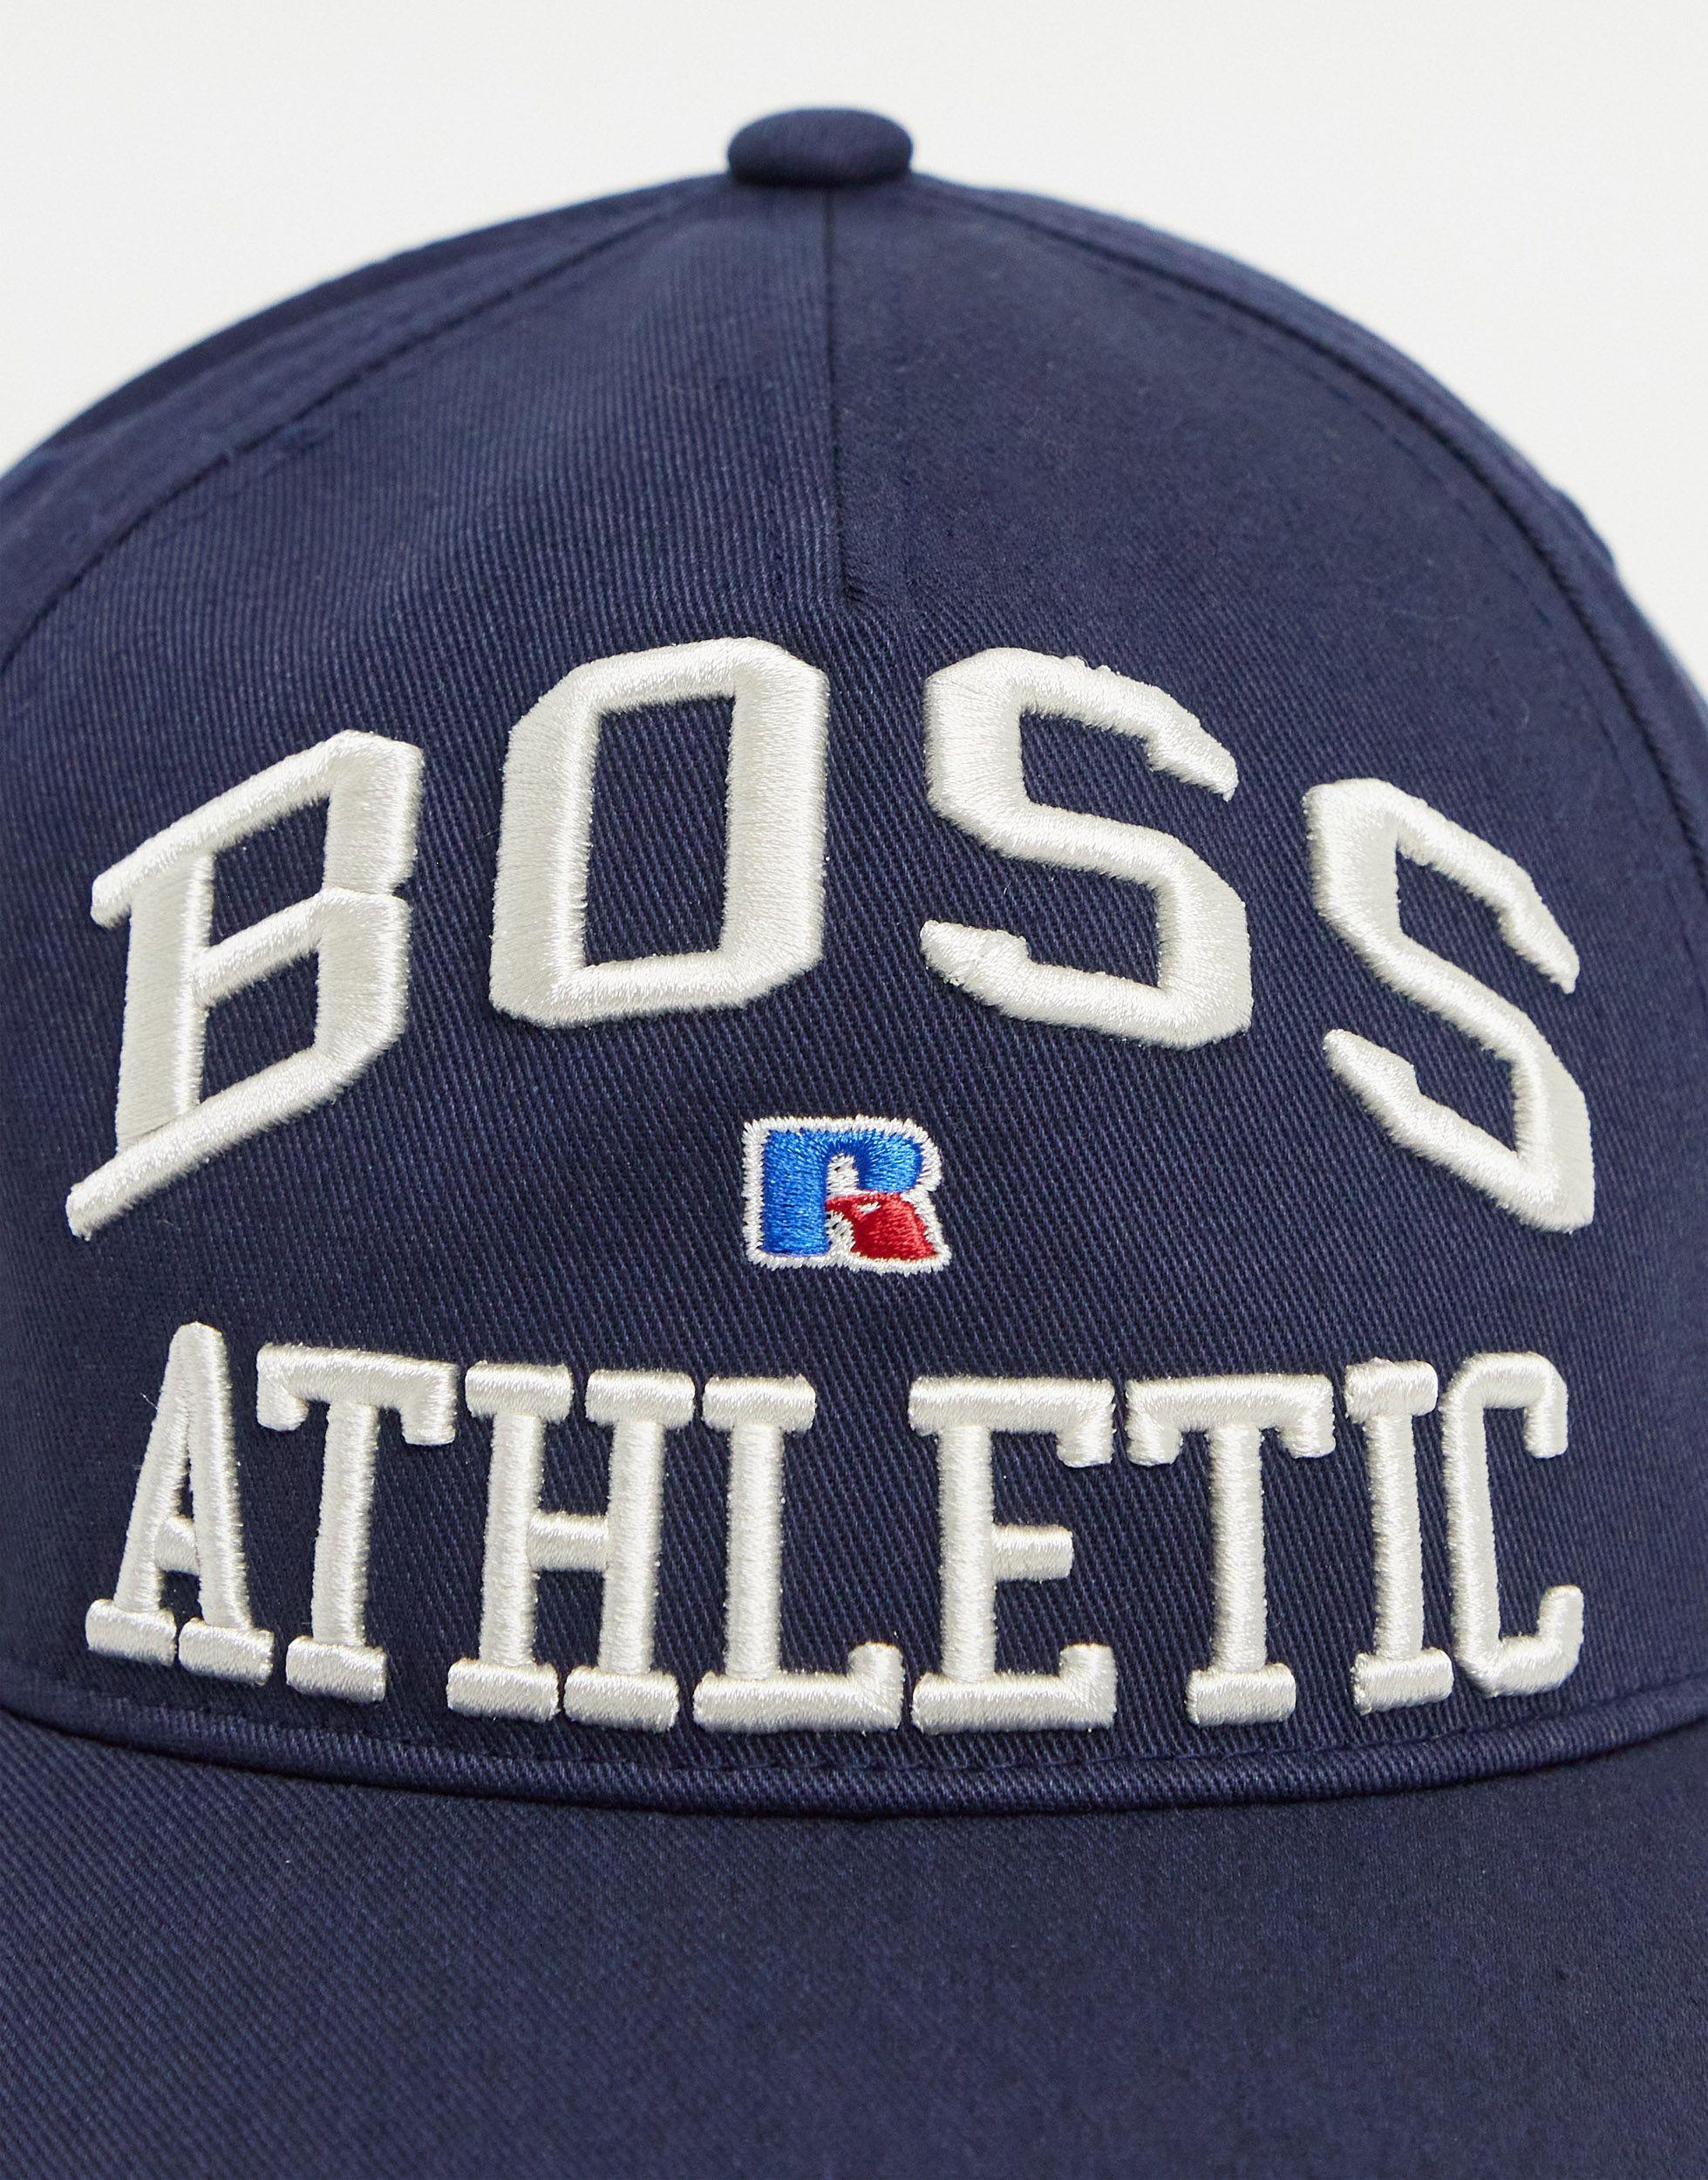 人気が高い ボス 帽子 navy - Beanie - HATS Athletic Russell x Boss アクセサリー メンズ ニット帽、 ビーニー サイズ:No-Size